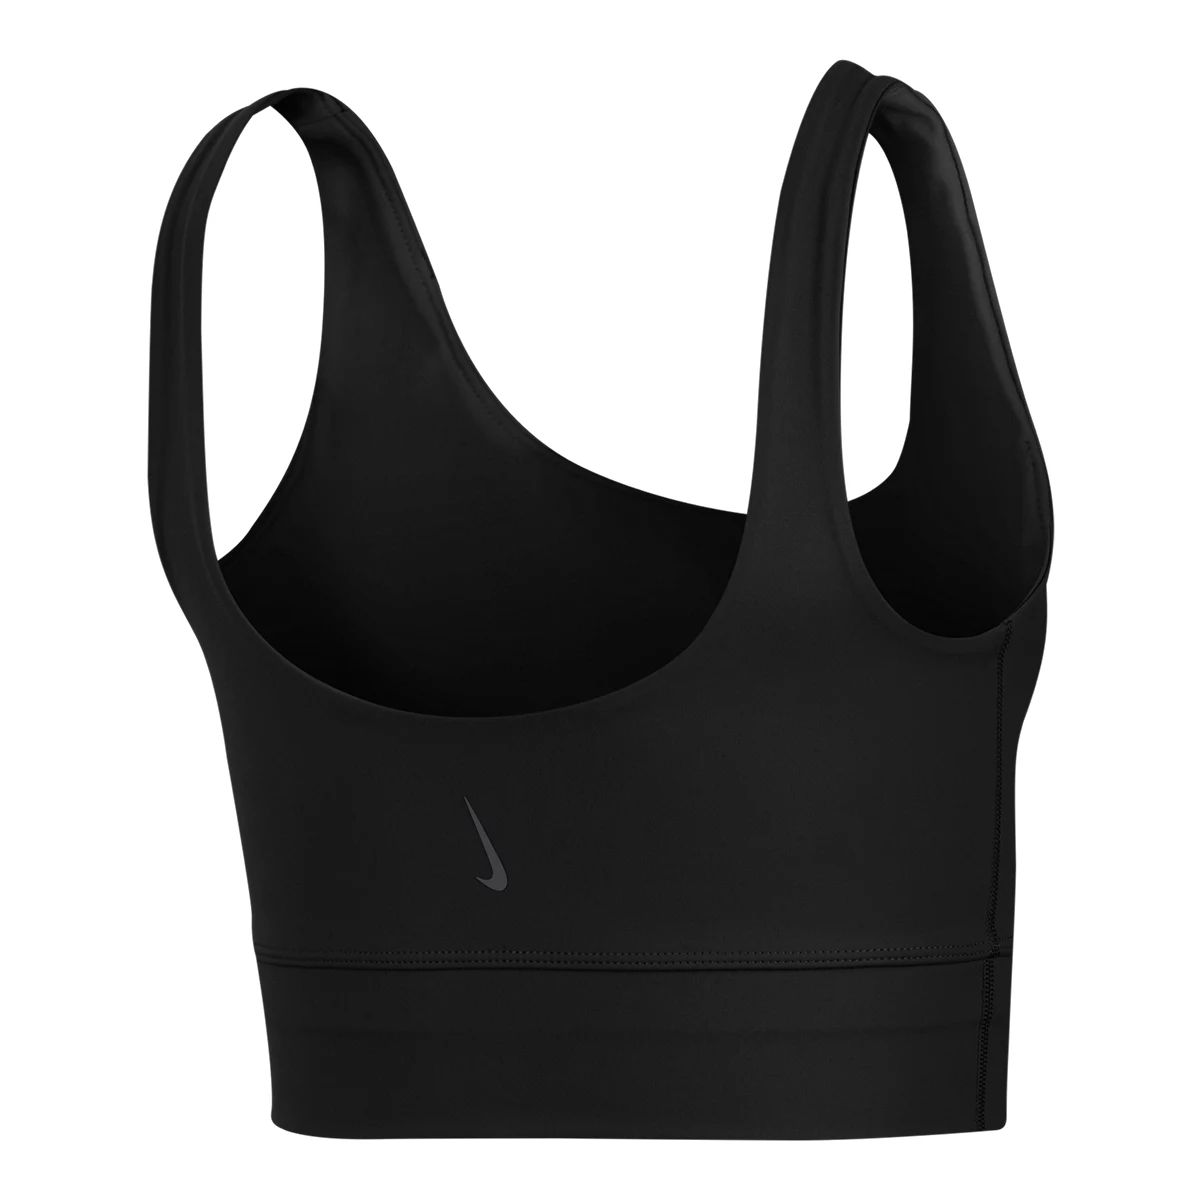 Nike Yoga Dri-FIT Women's Metallic Trim Tank Black (Plus Size) 2X